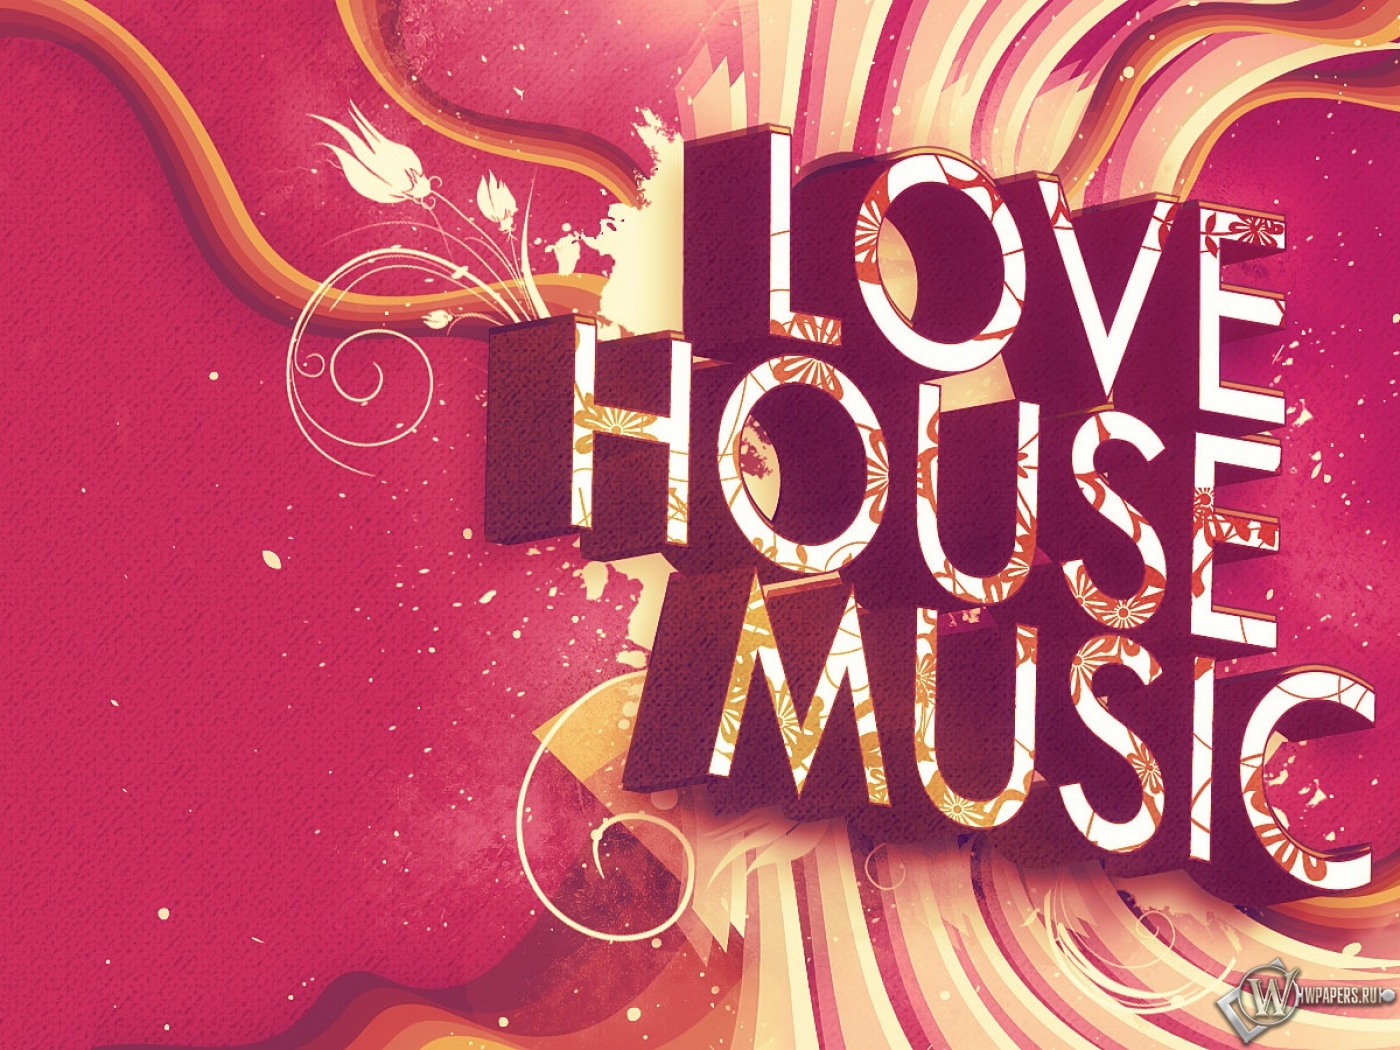 LOVE HOUSE MUSIC 1400x1050